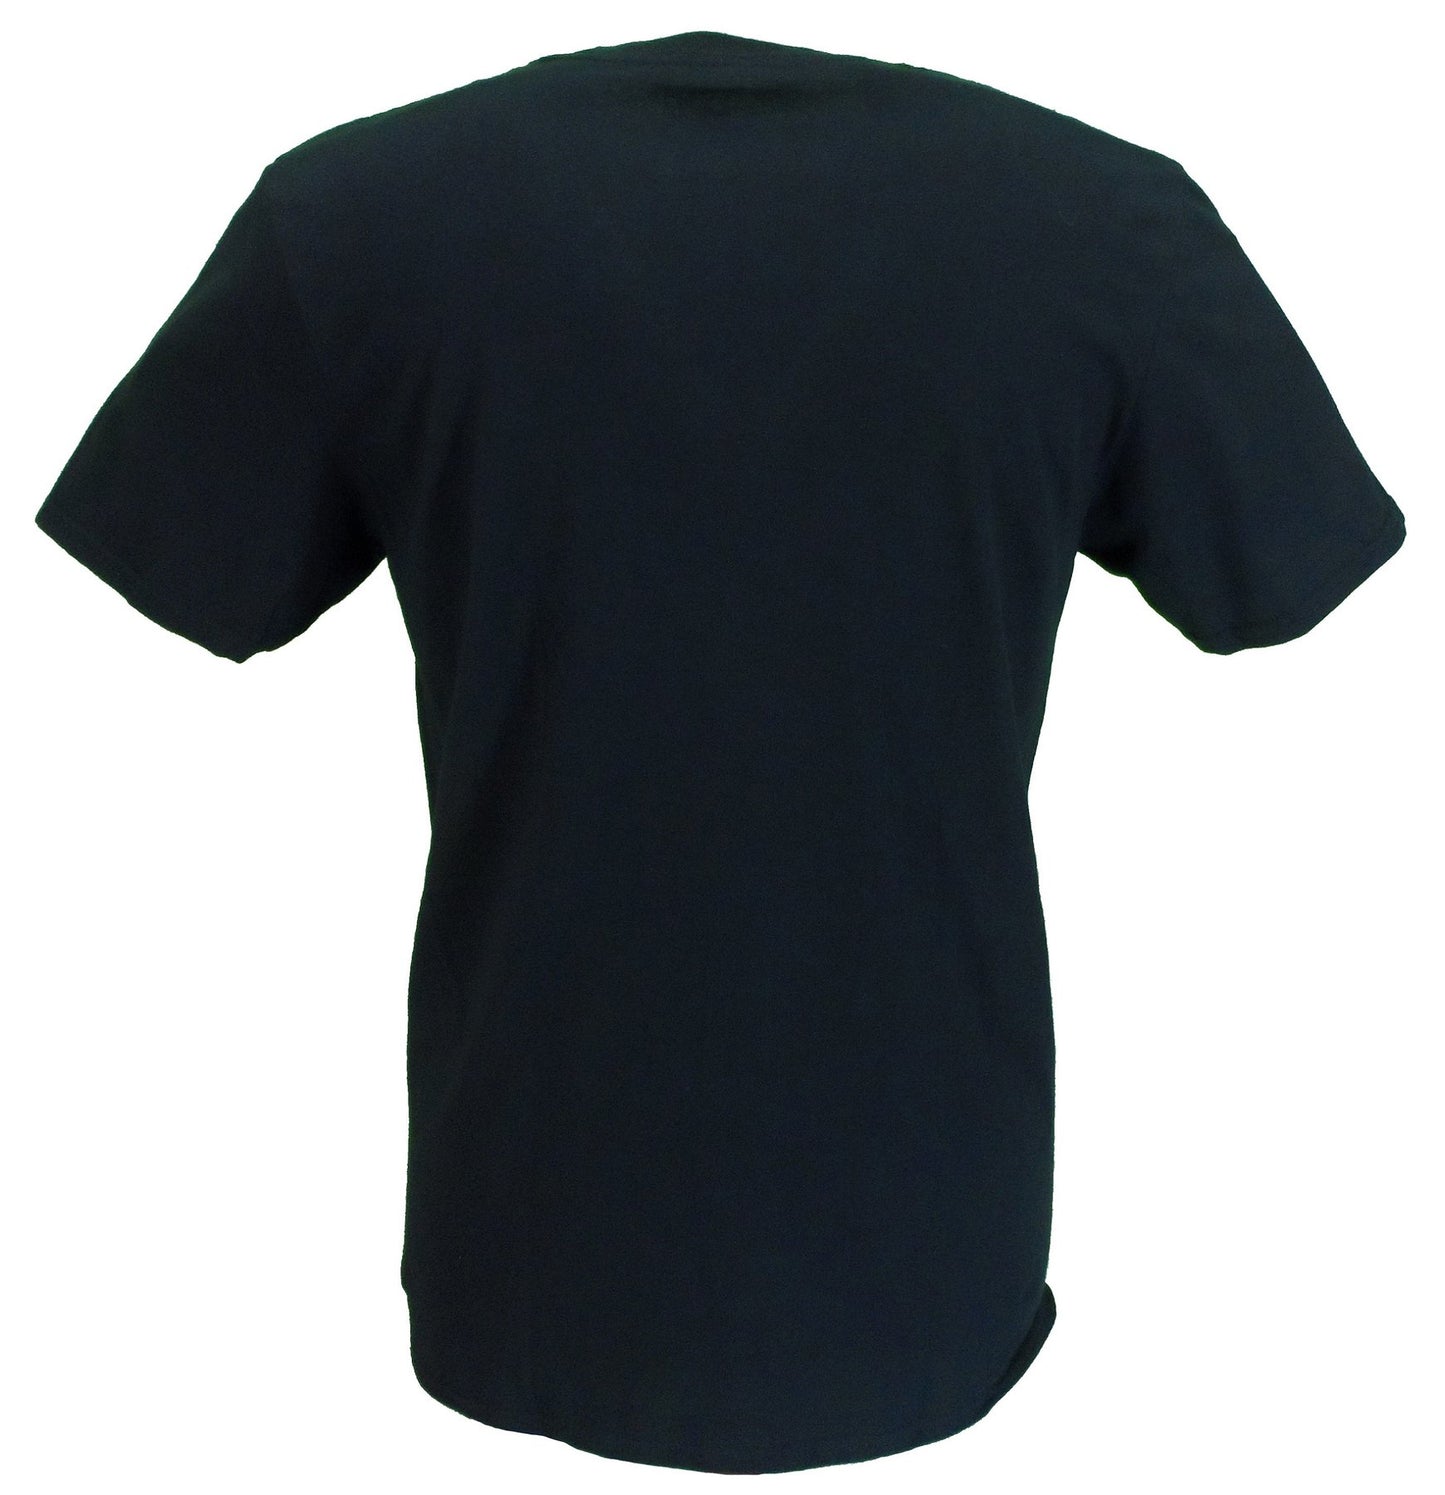 メンズ公式ライセンスOasisブラック デッカ ロゴ T シャツ